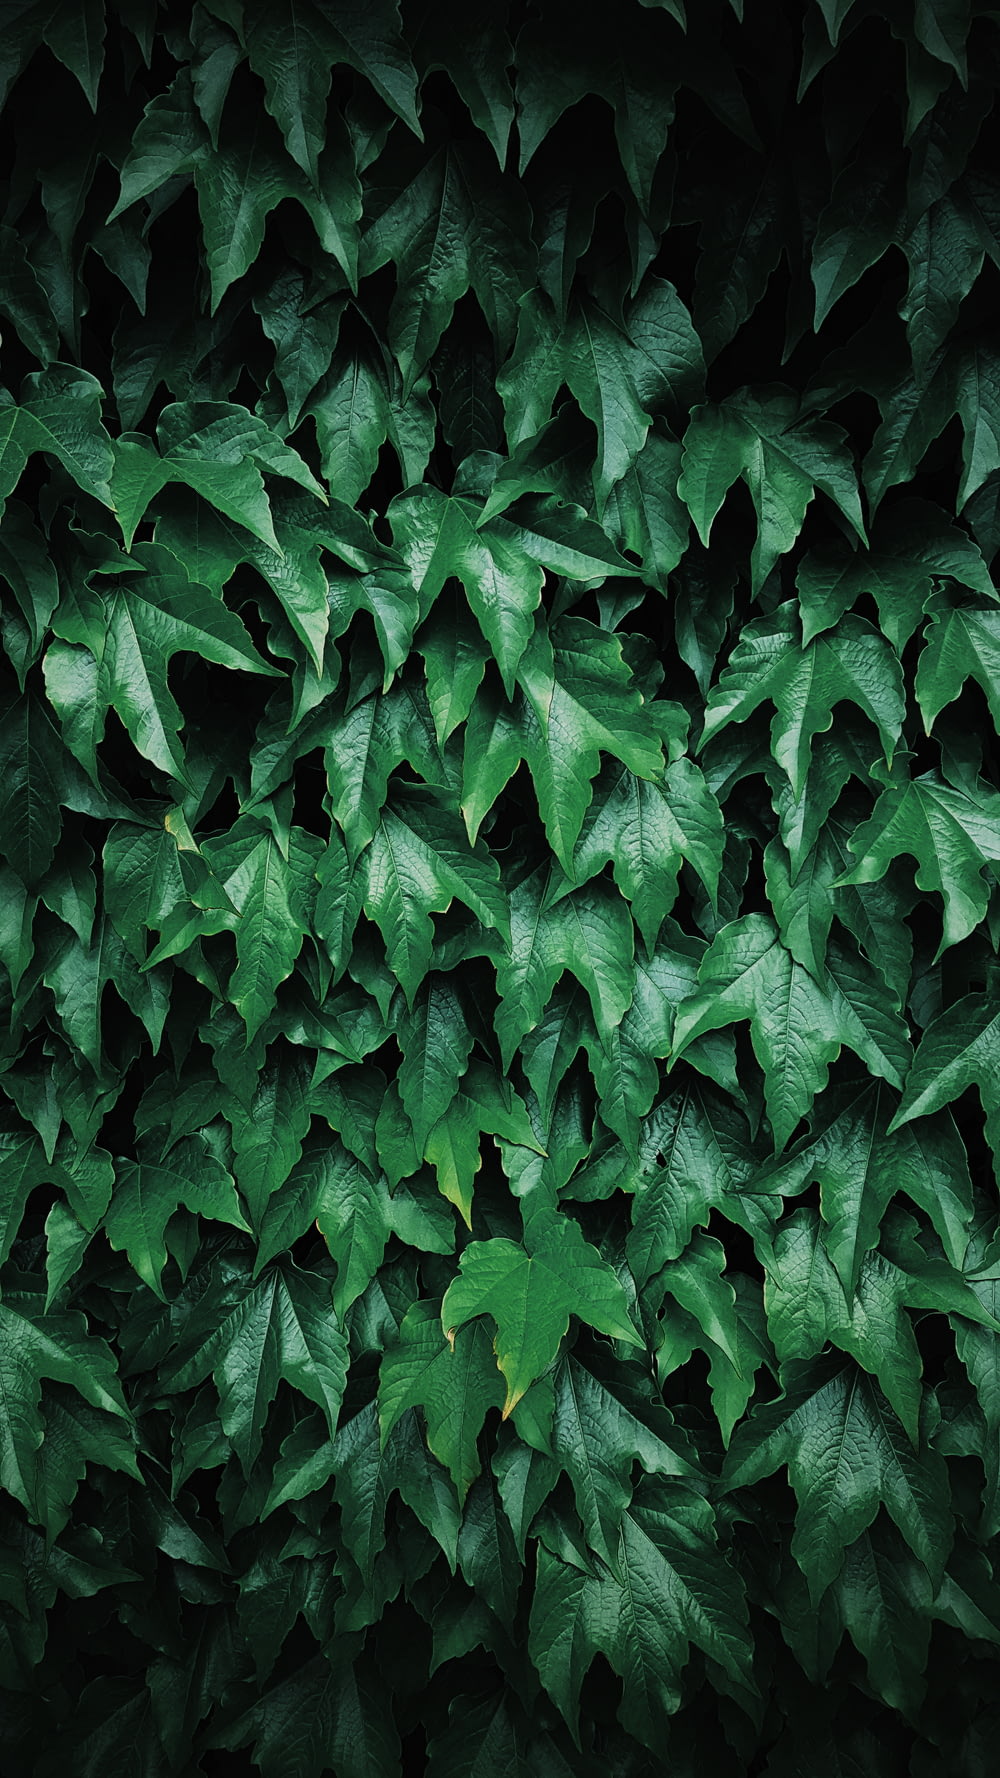 녹색 잎의 얕은 초점